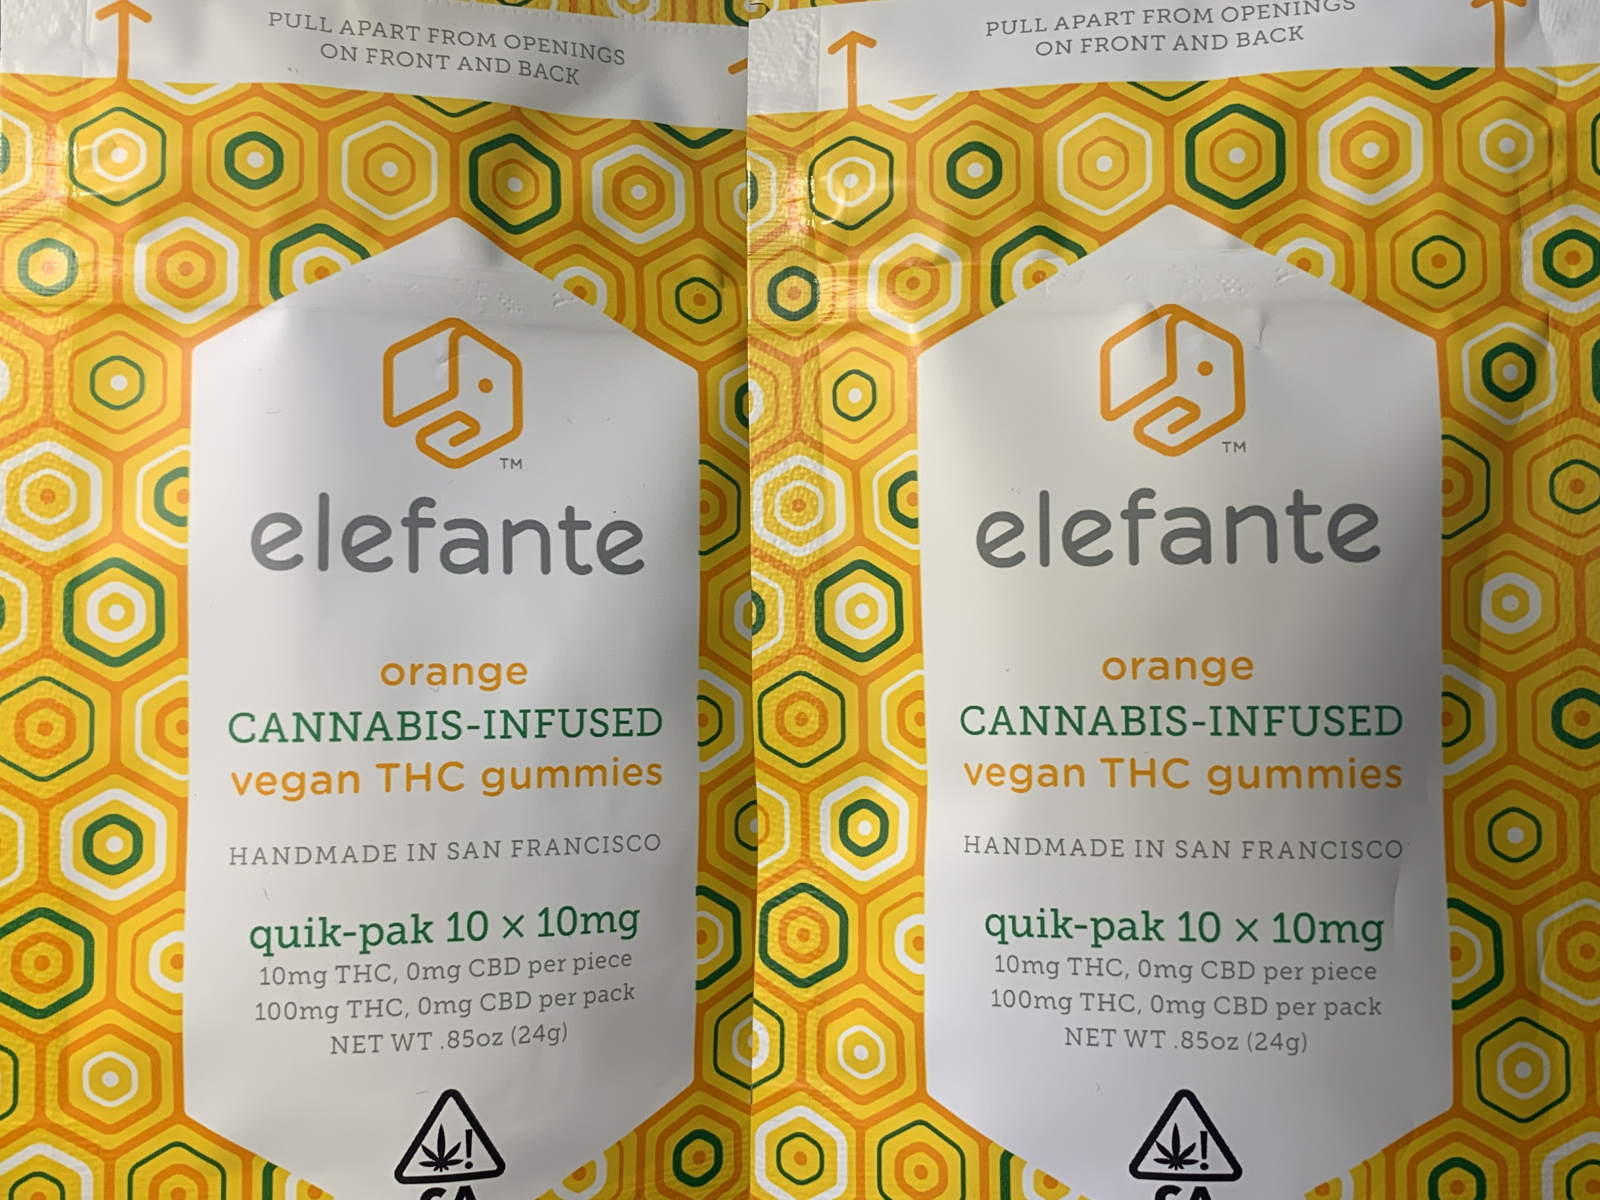 Elefante Orange 100mg package thc infused vegan gummies 